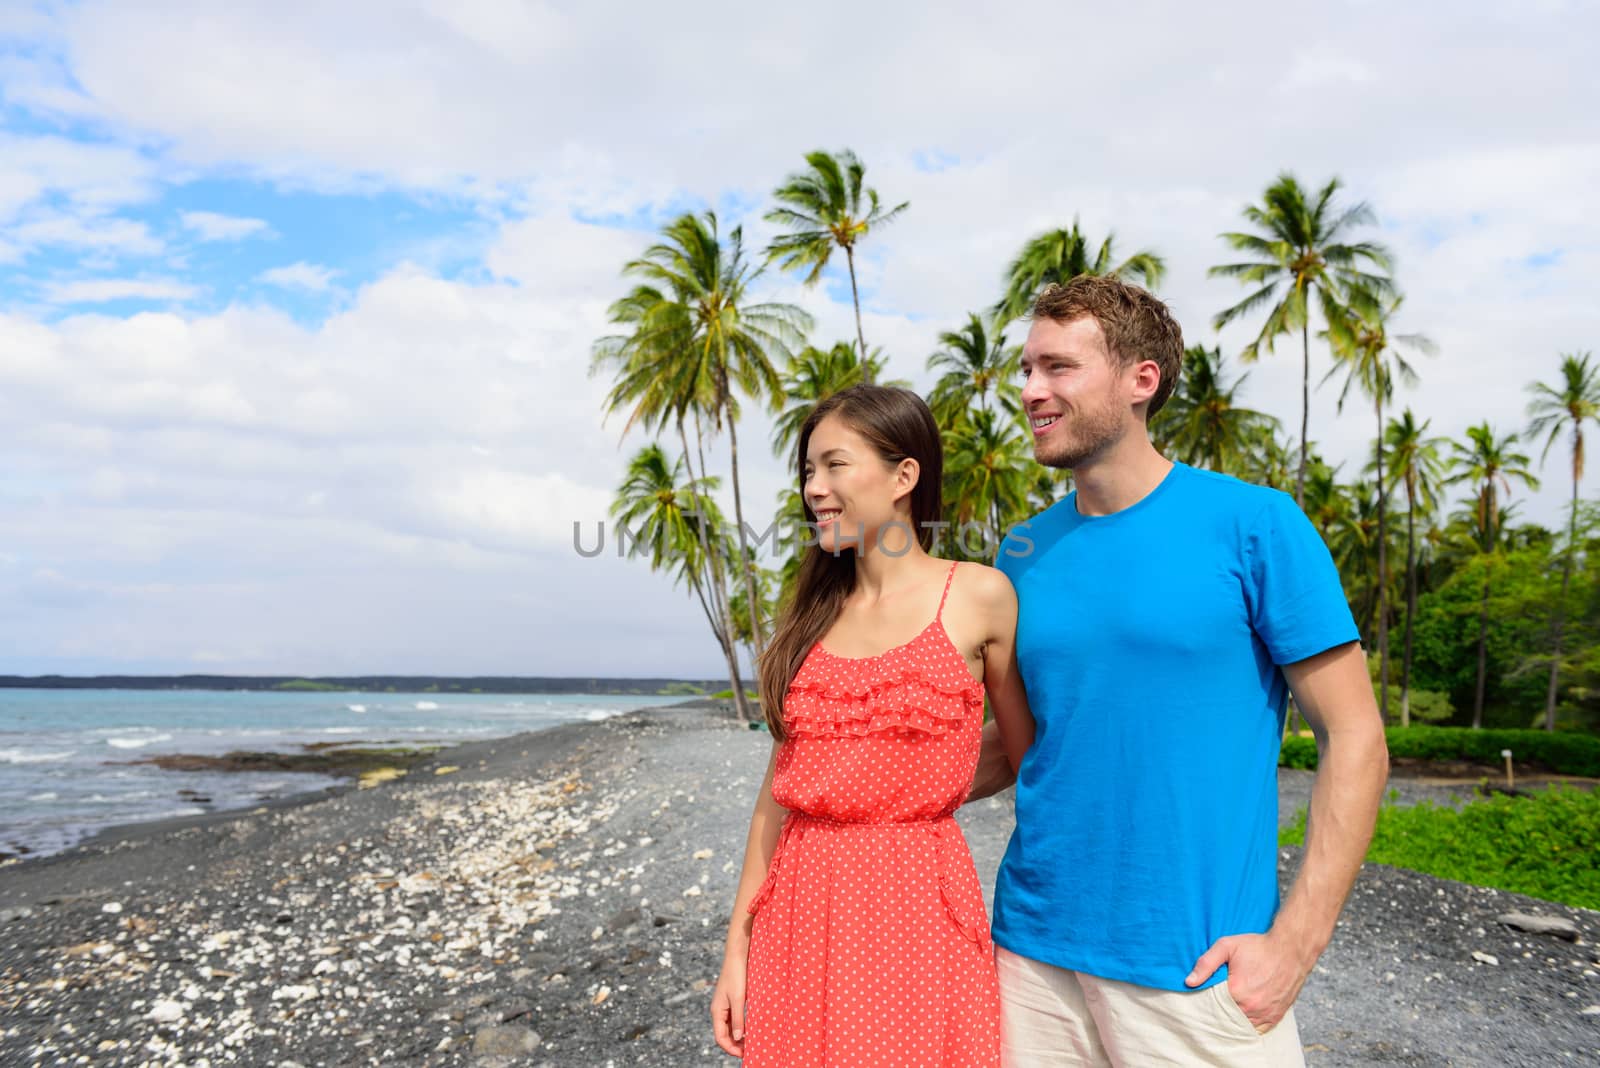 Hawaii couple enjoying beach holidays looking at view of ocean from black sand volcanic beach on Big Island of Hawaii, hawaiian travel vacation.